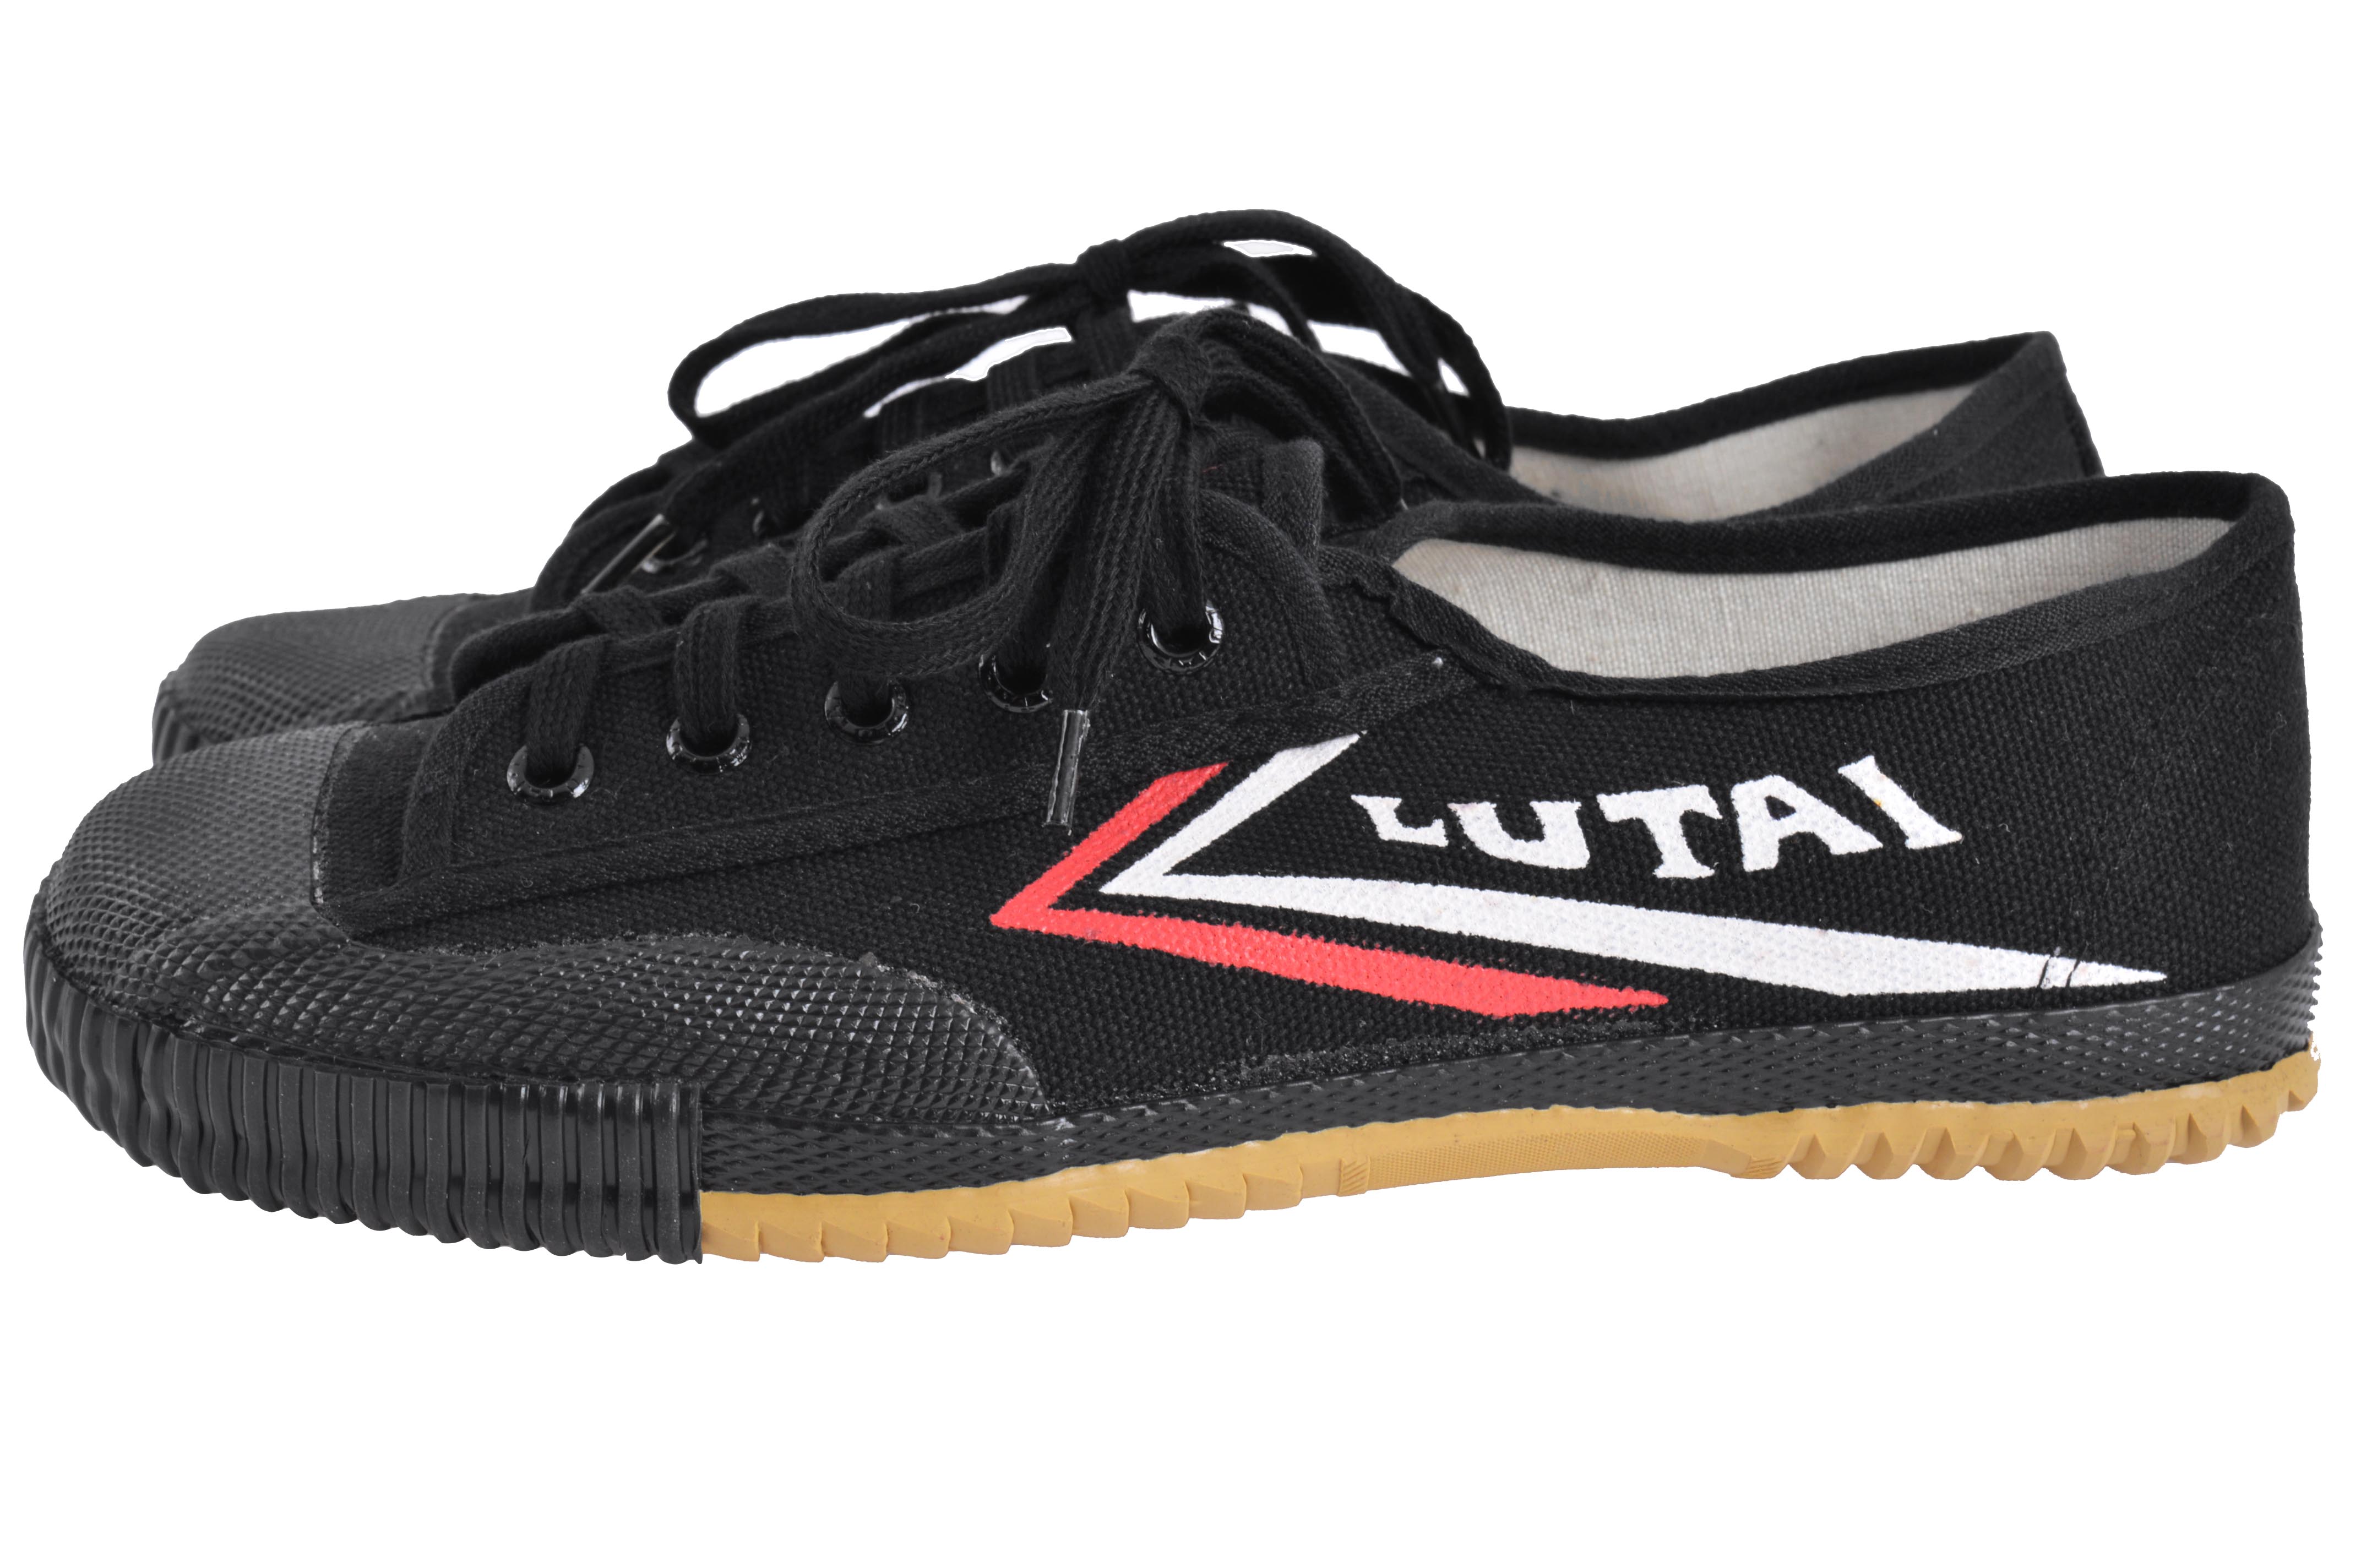 Lutai Wushu Shoes